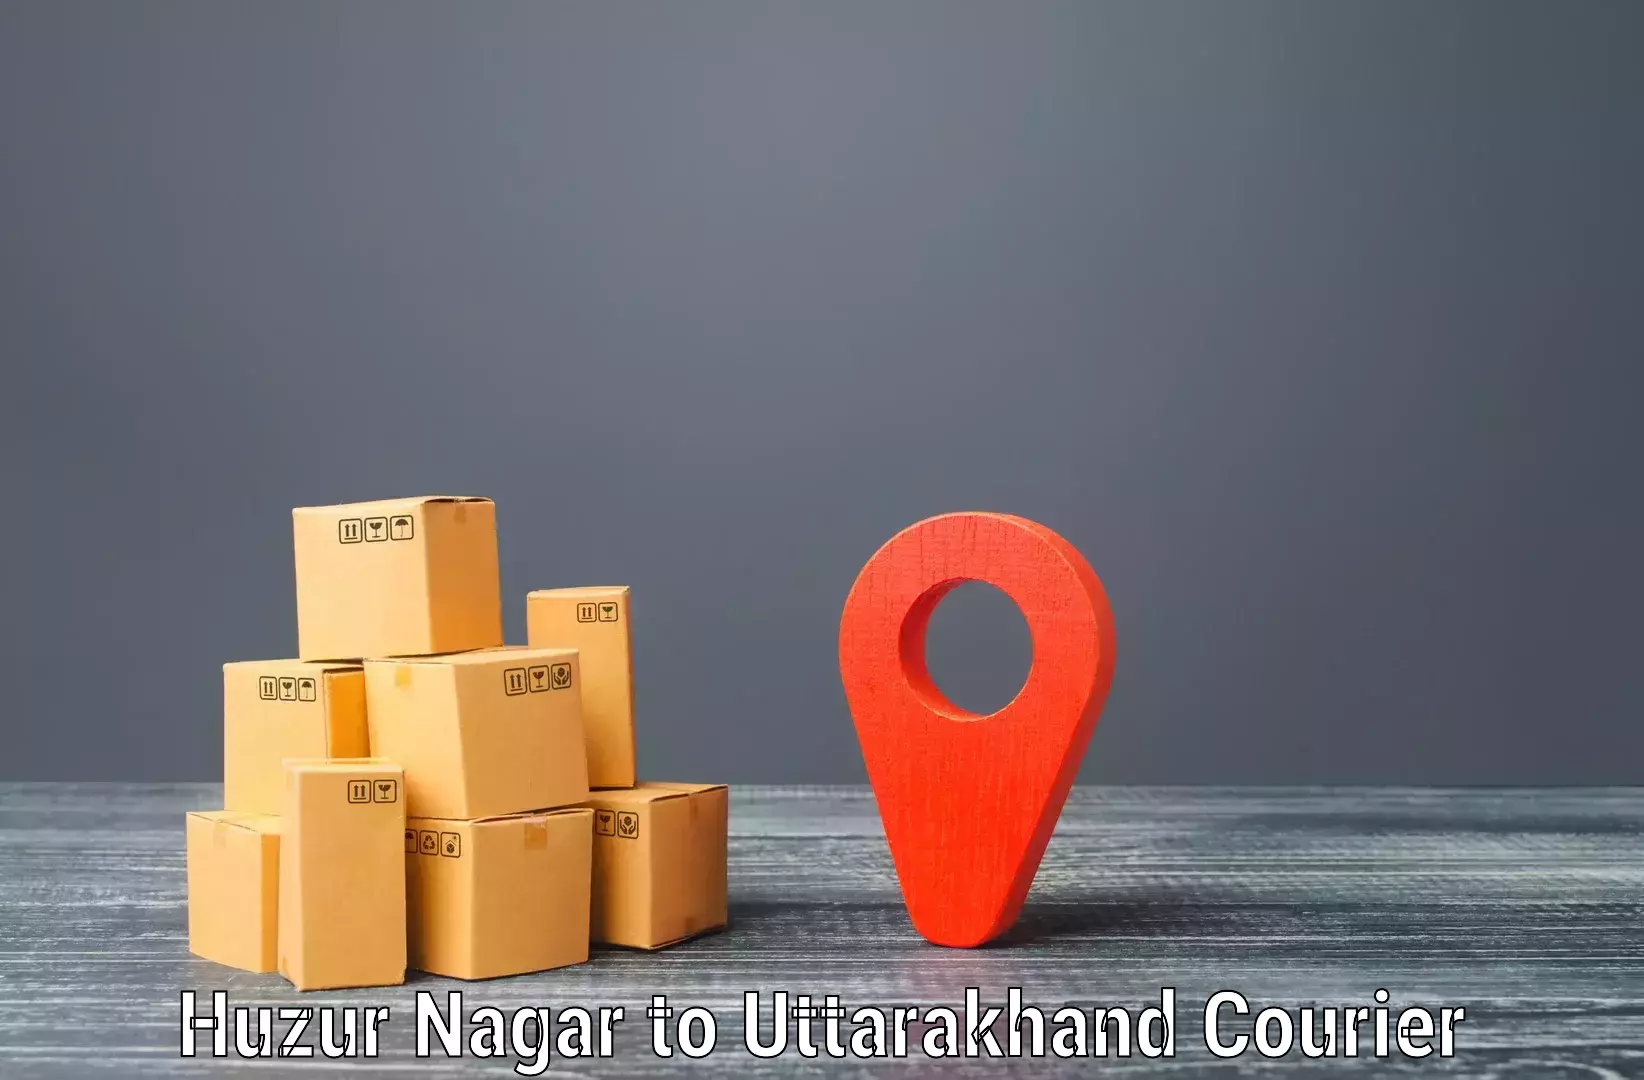 International courier networks Huzur Nagar to Ramnagar